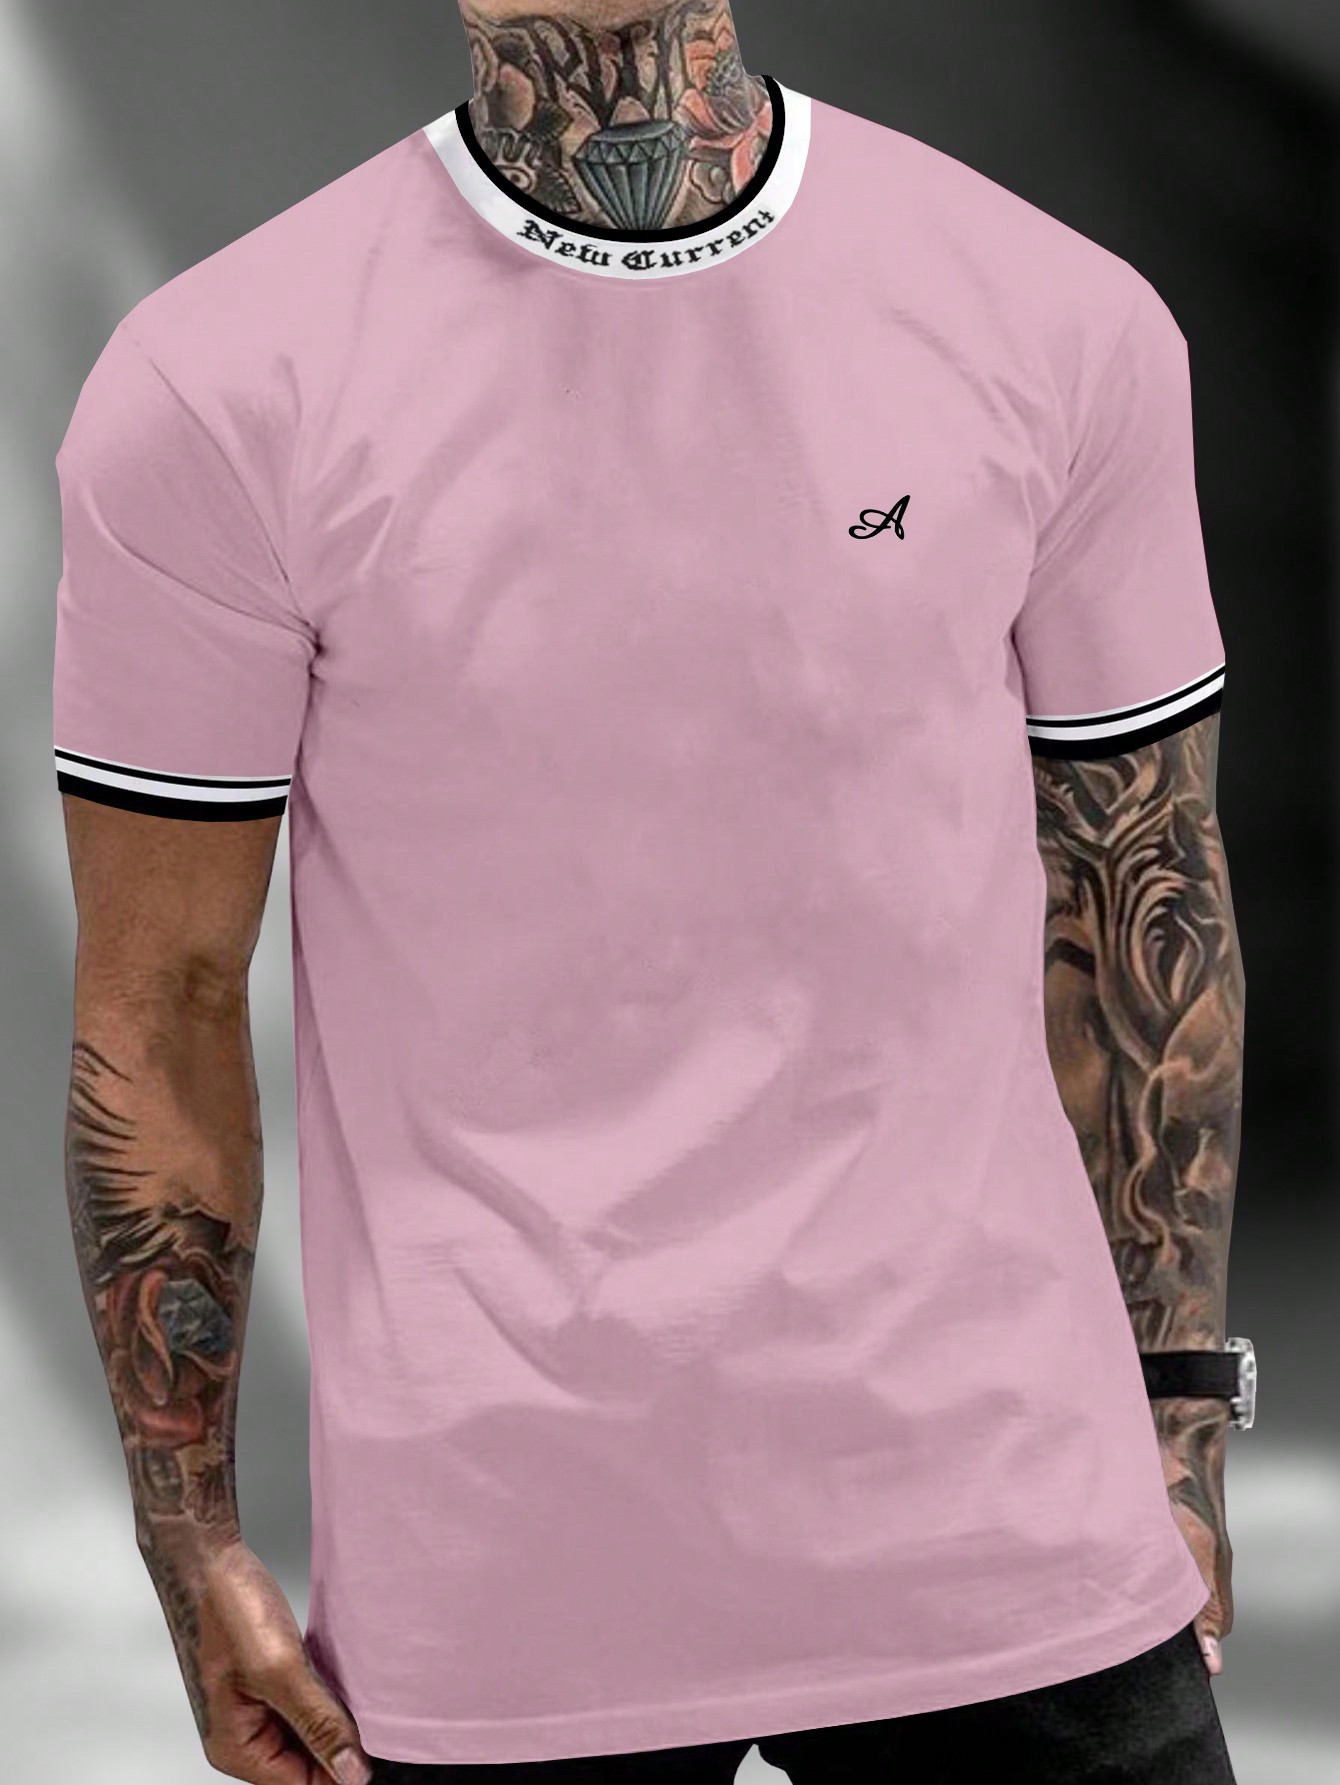 Мужская футболка с контрастным буквенным принтом Manfinity Homme и декоративной окантовкой, розовый футболка мужская с контрастной отделкой madison 170 насыщенный зеленый белый размер xl